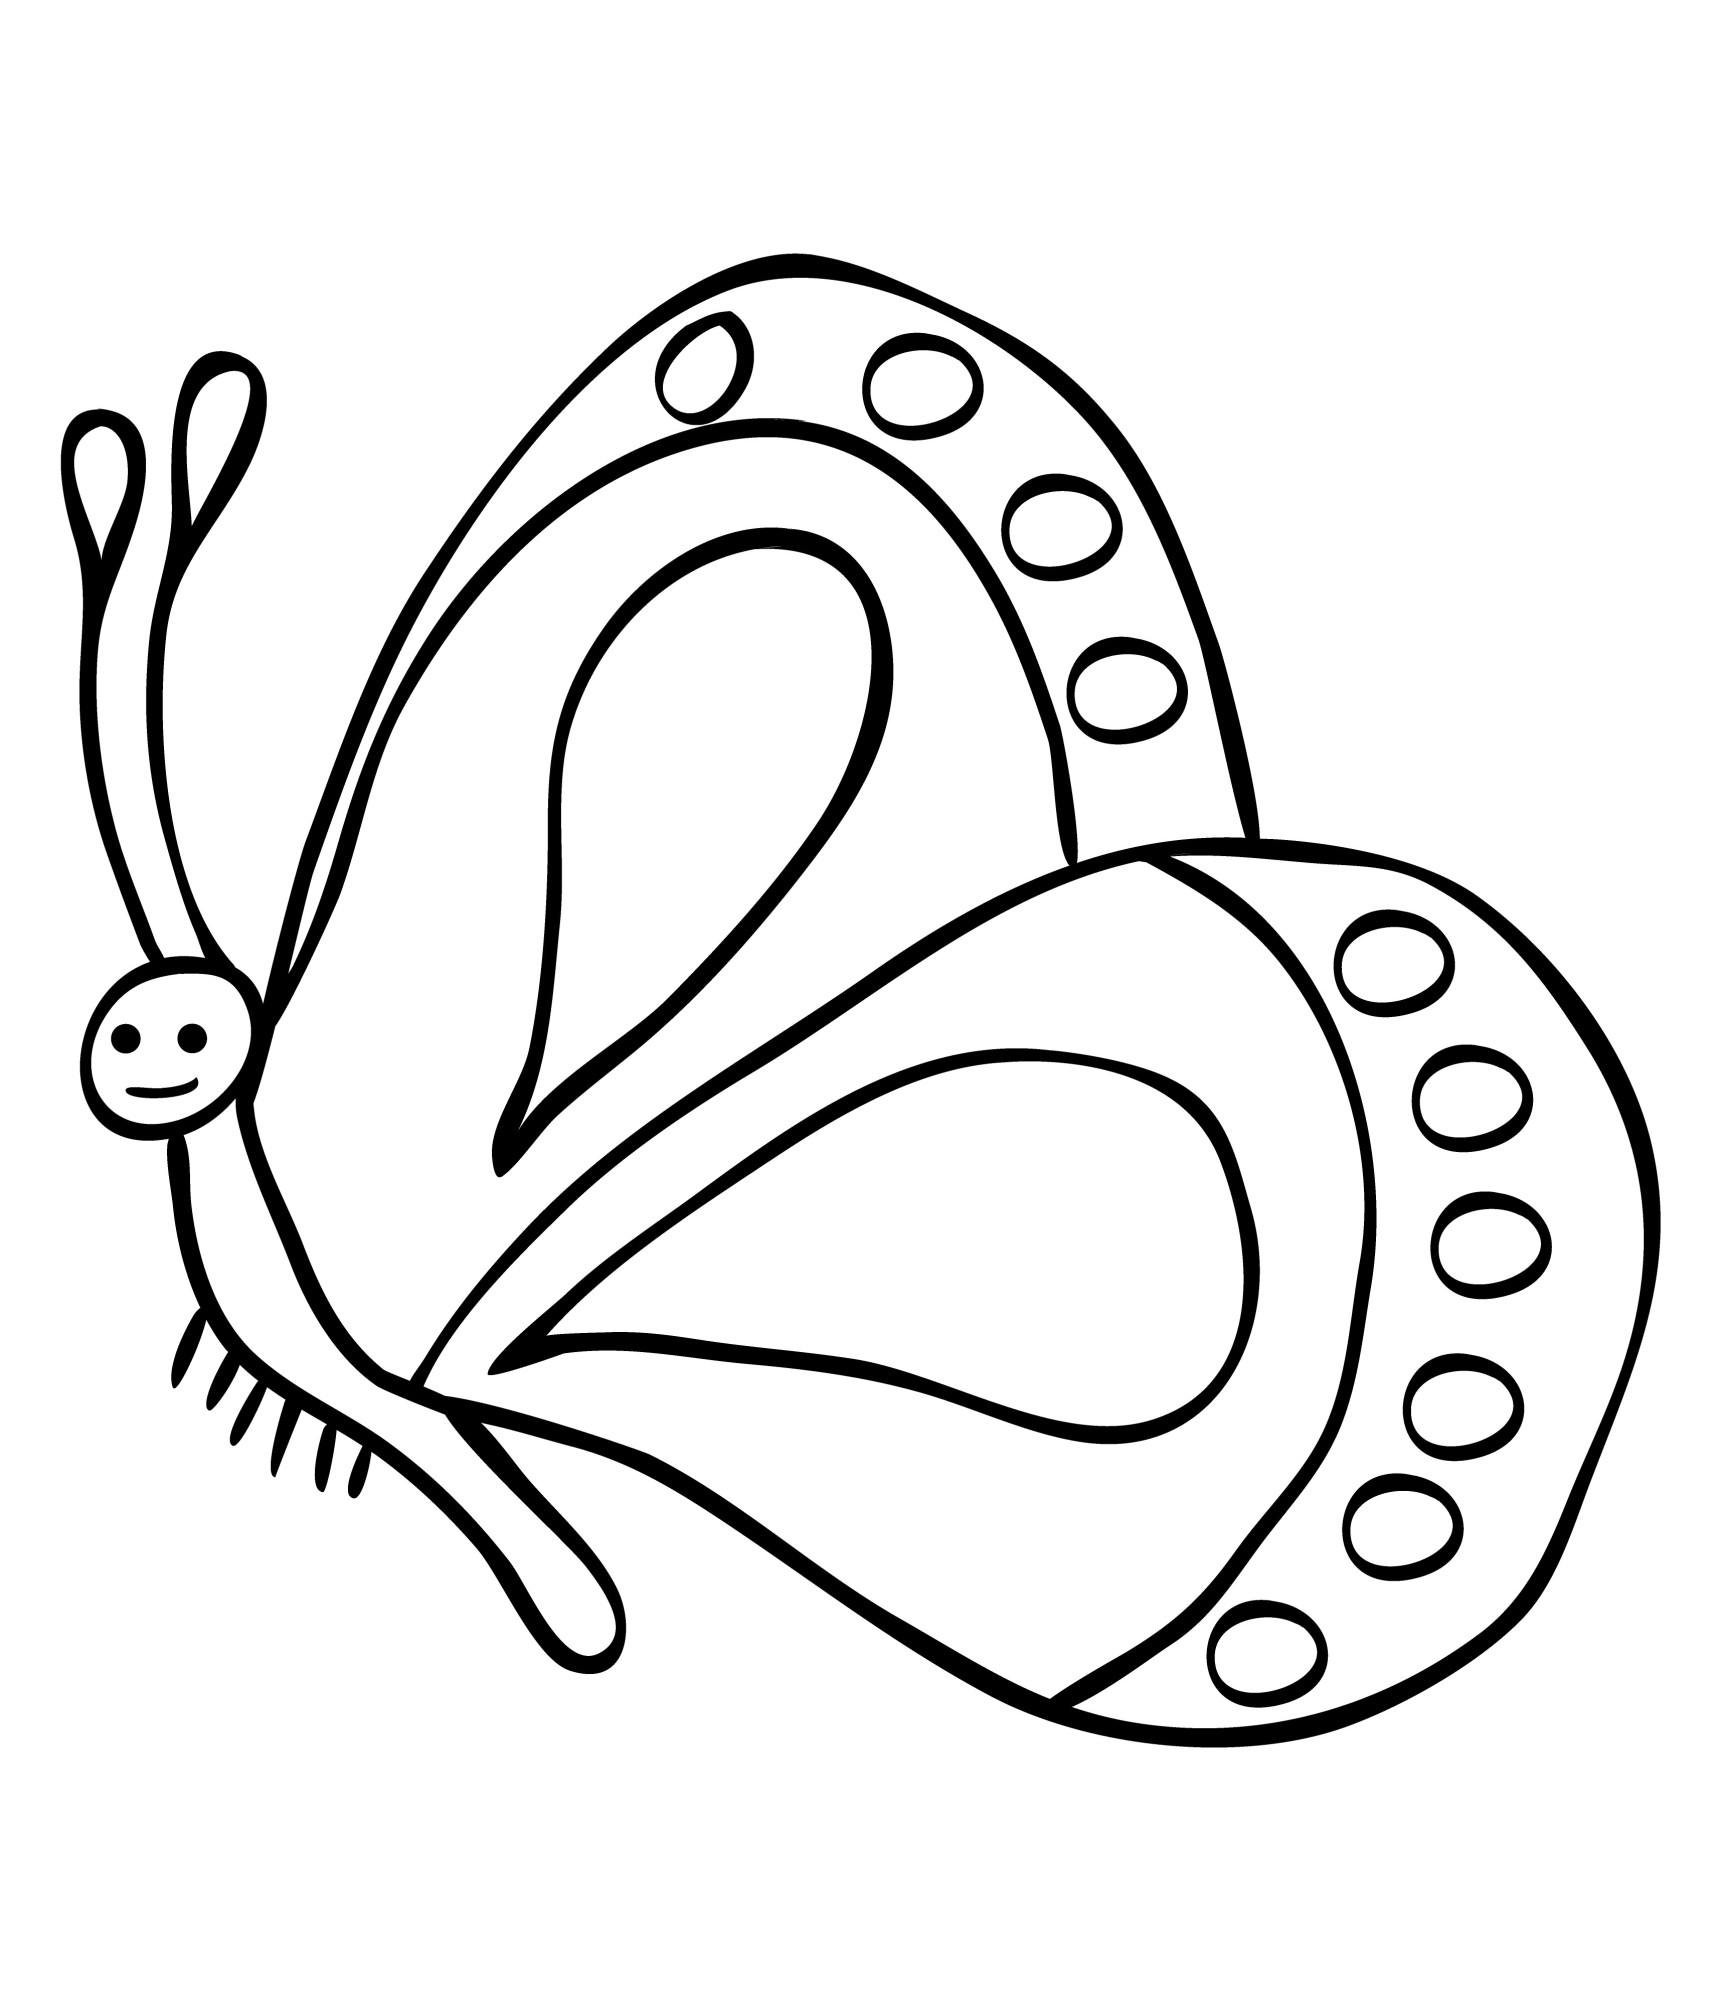 Раскраска для детей: простая бабочка